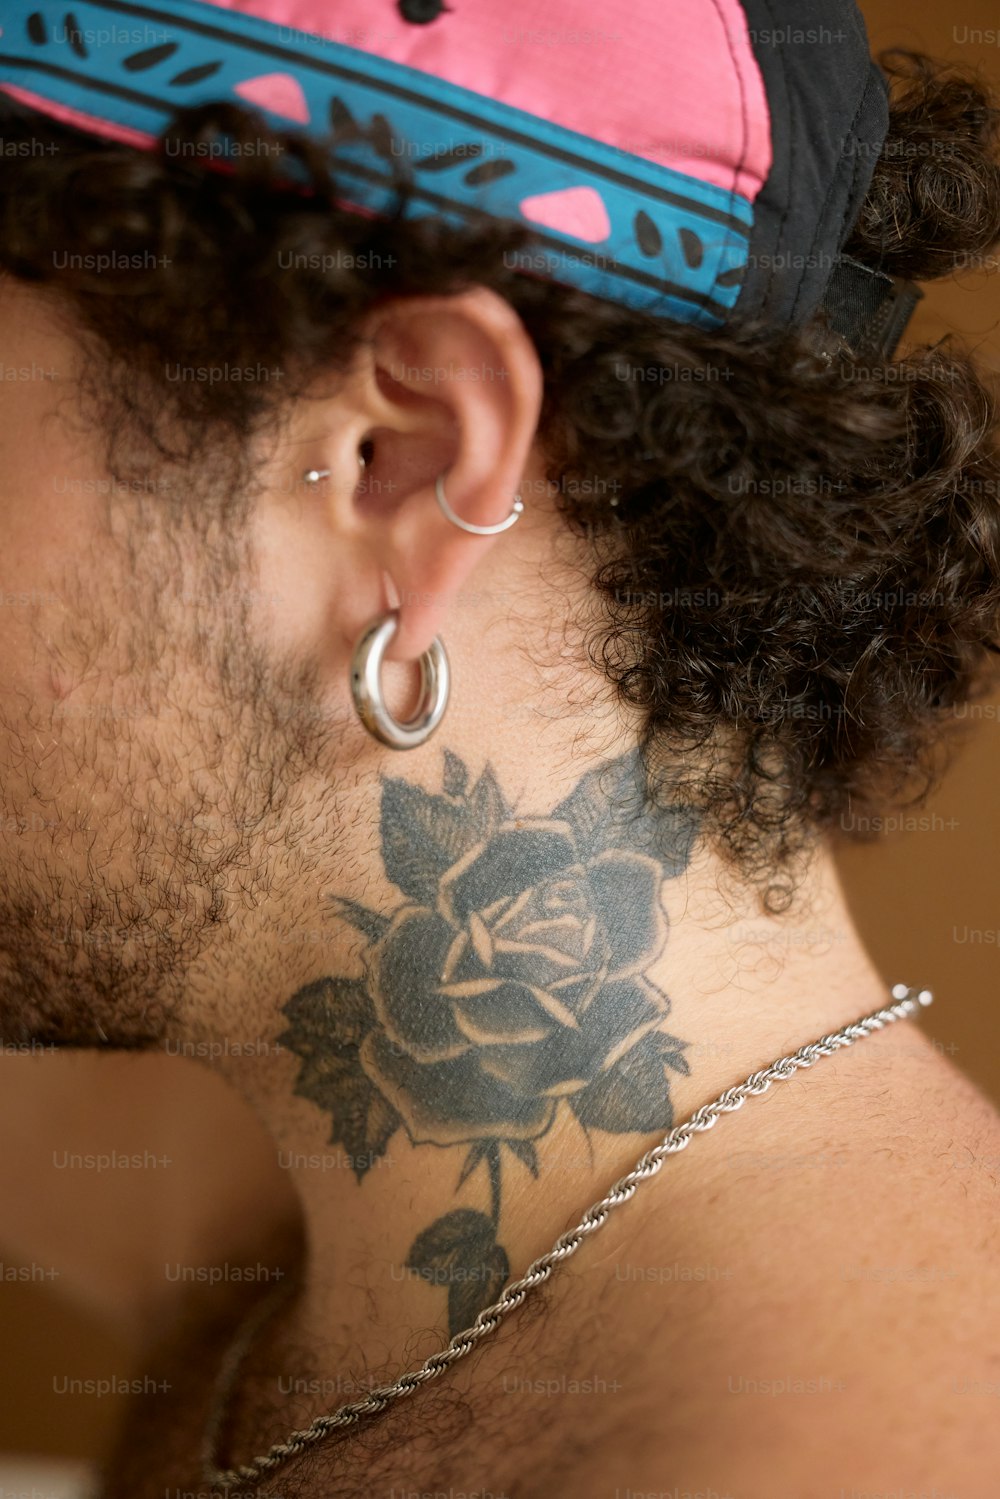 un homme avec un tatouage de rose sur le cou